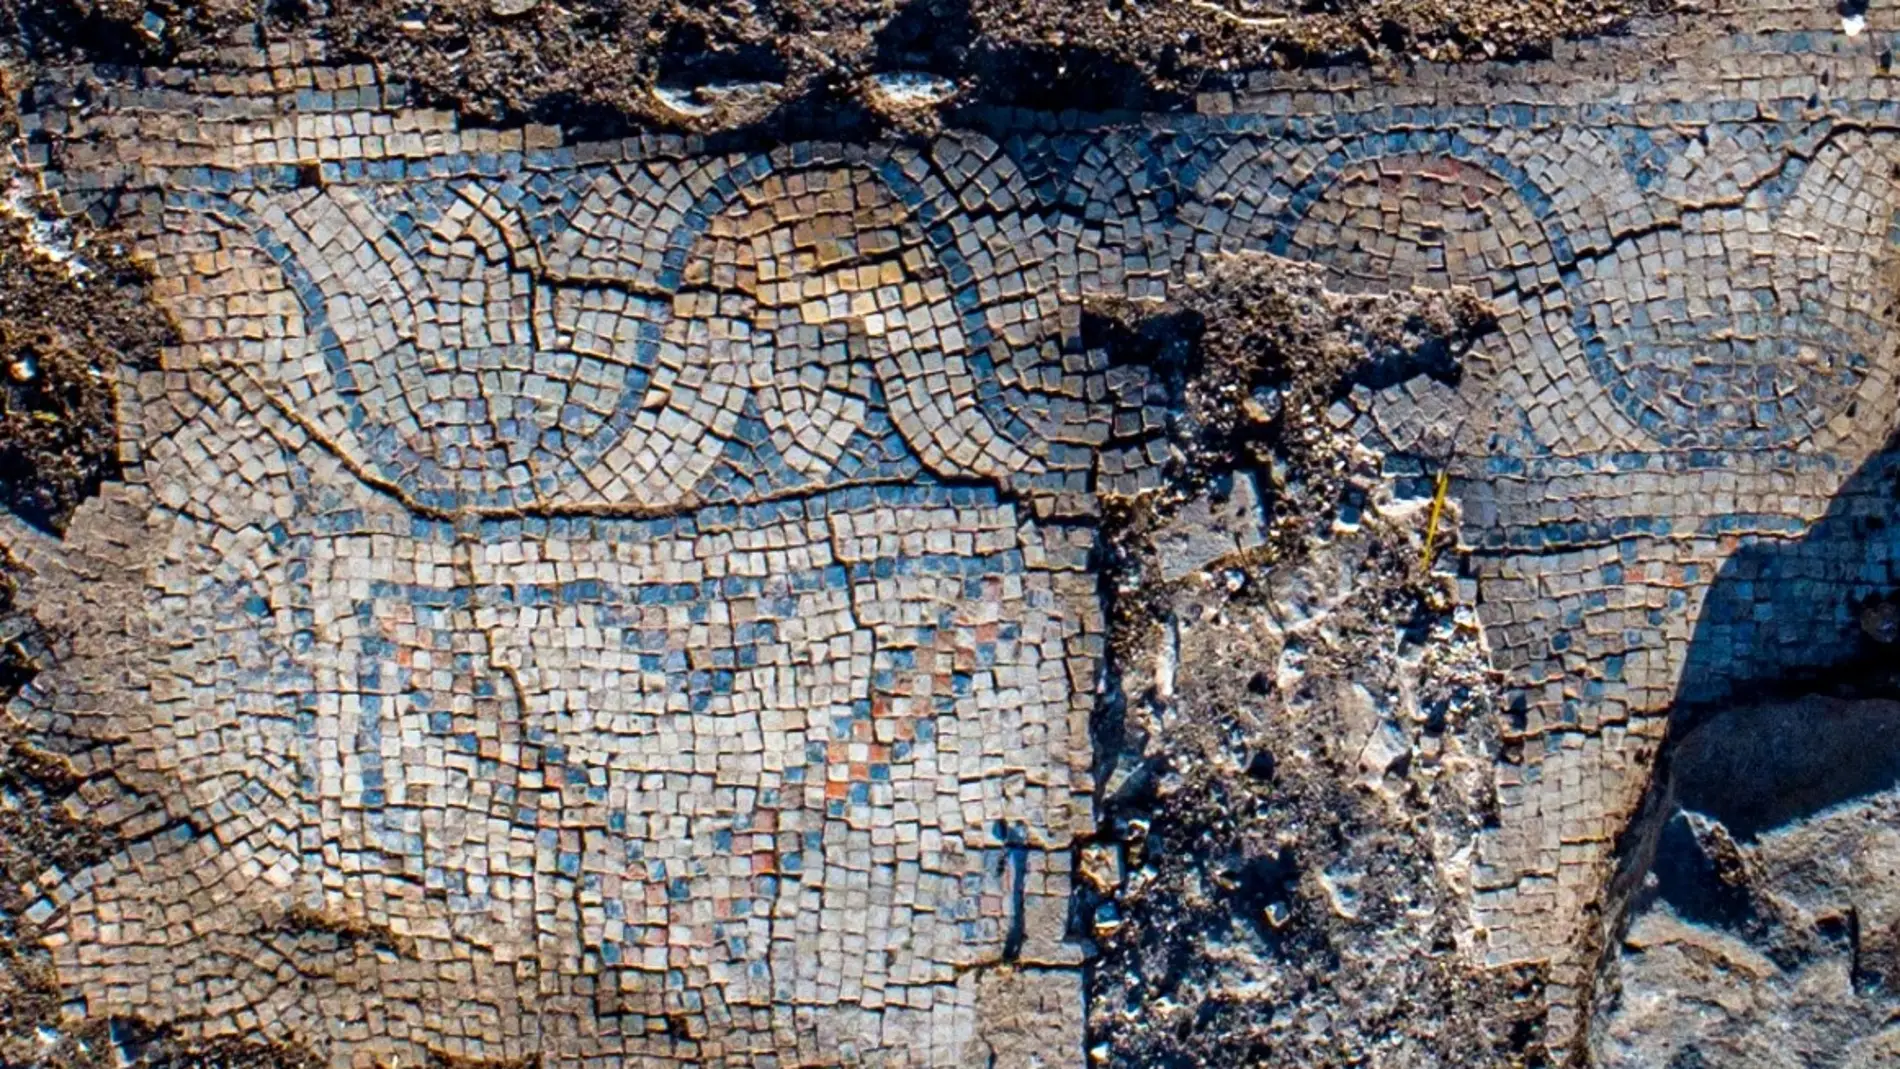 Detalle de uno de los mosaicos descubiertos